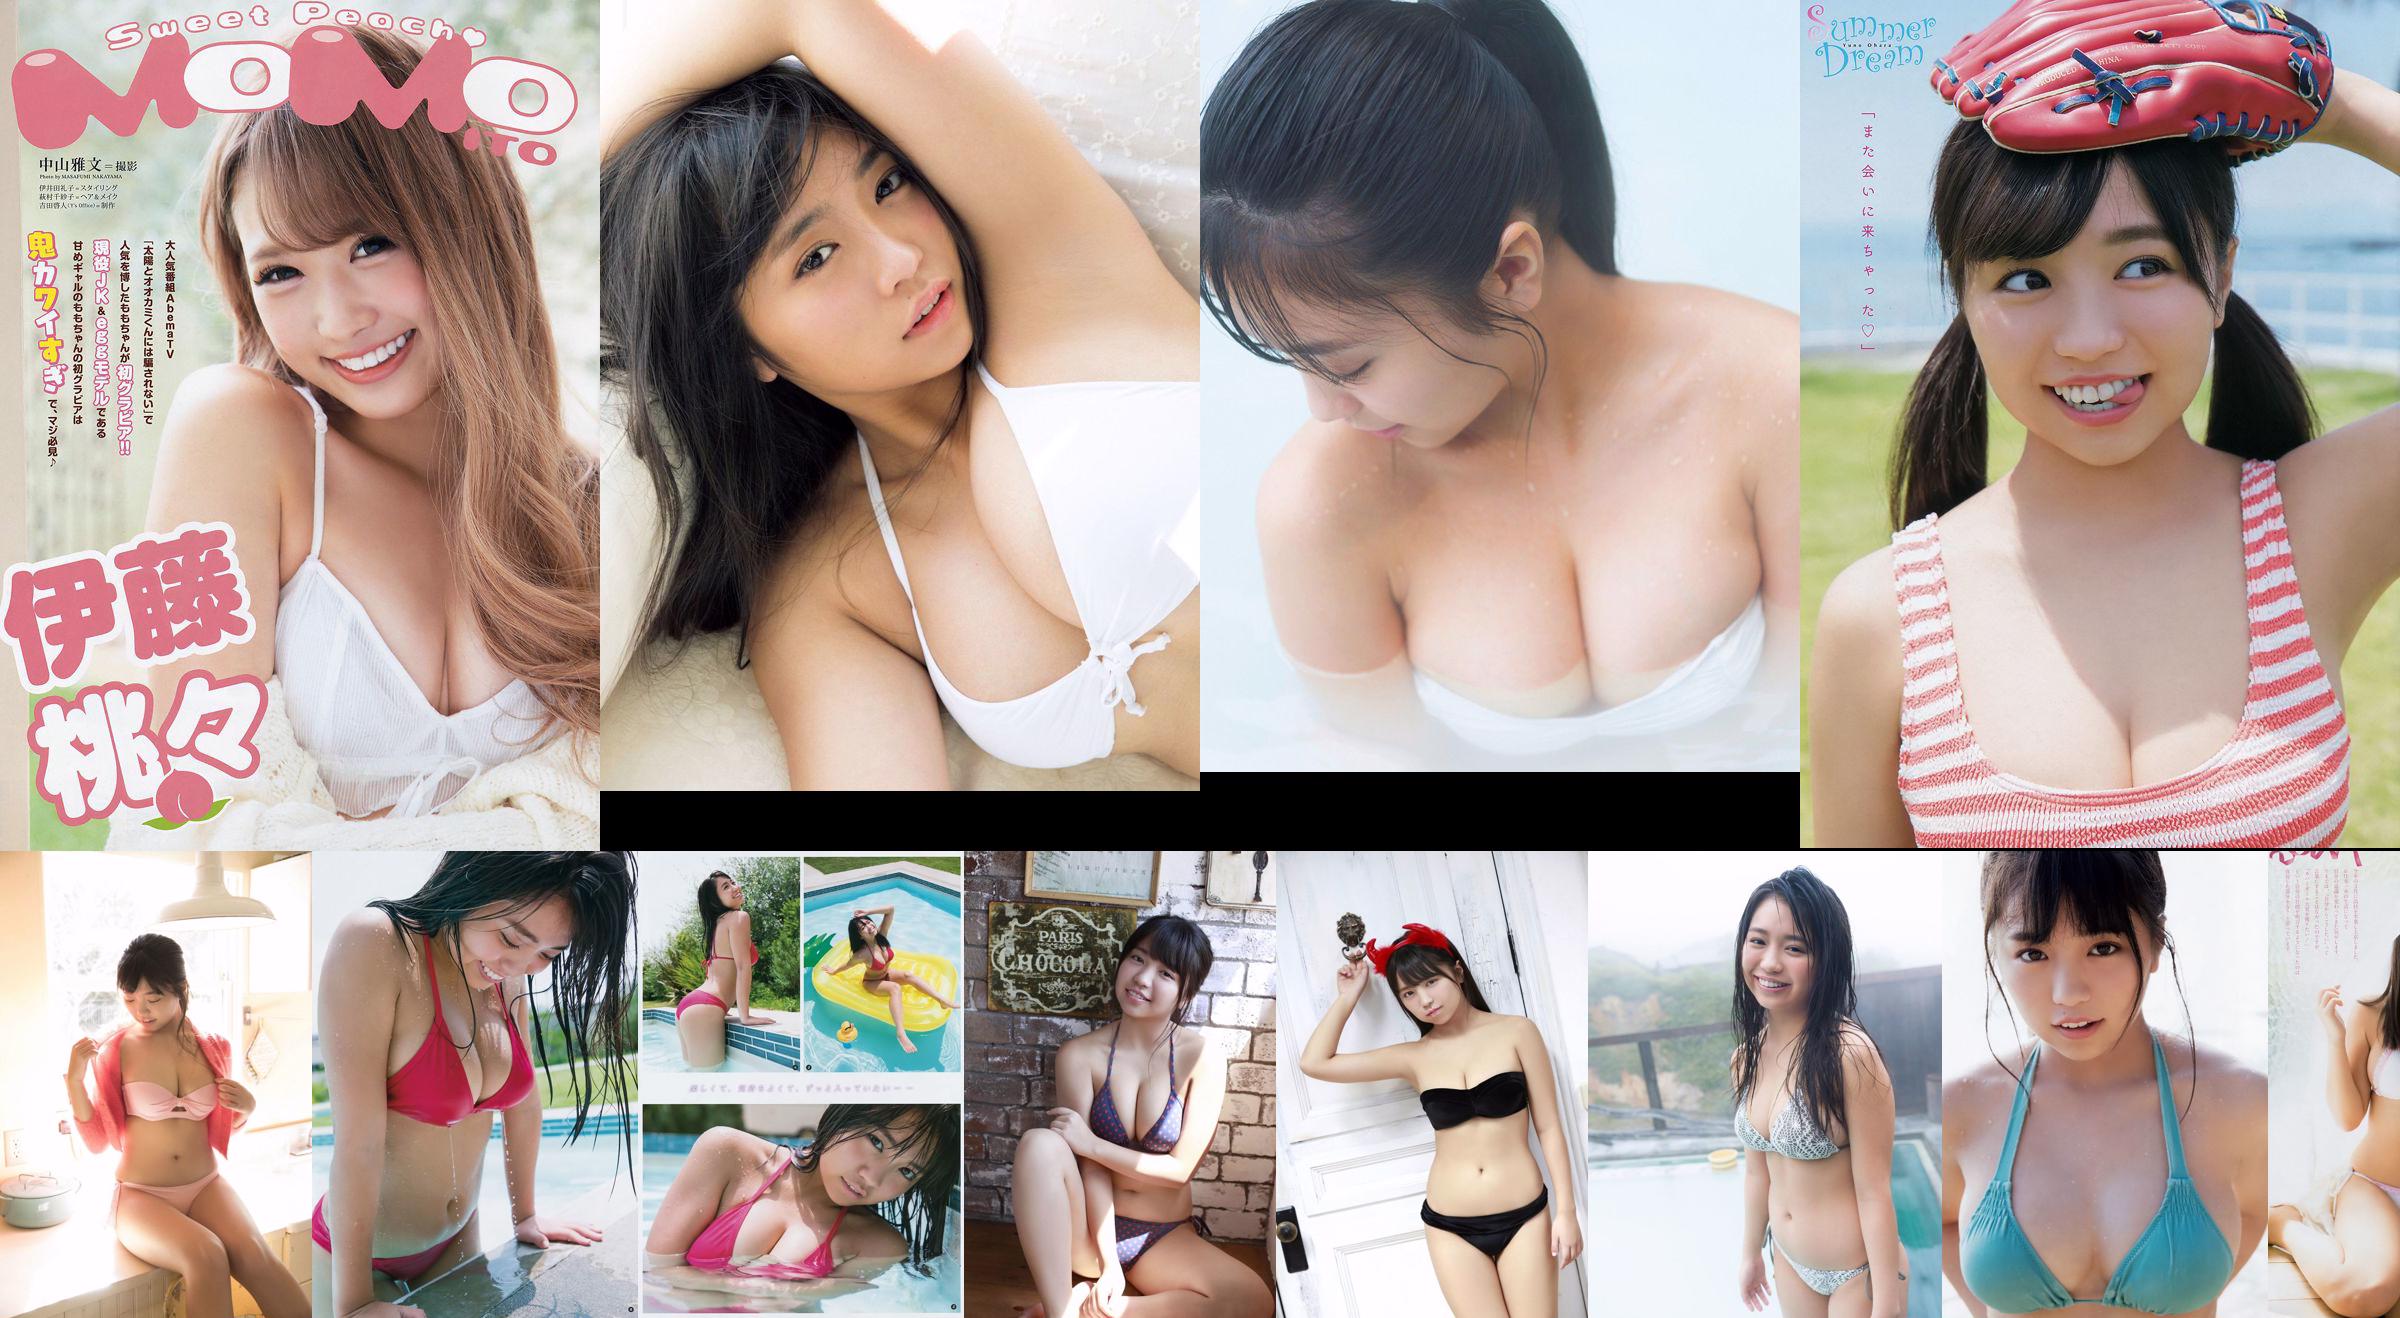 [FRIDAY] Ohara Yuno "Mixed bath デートへGO いま最もグラビアの神に爱される18歳" photo No.bd066d Page 6